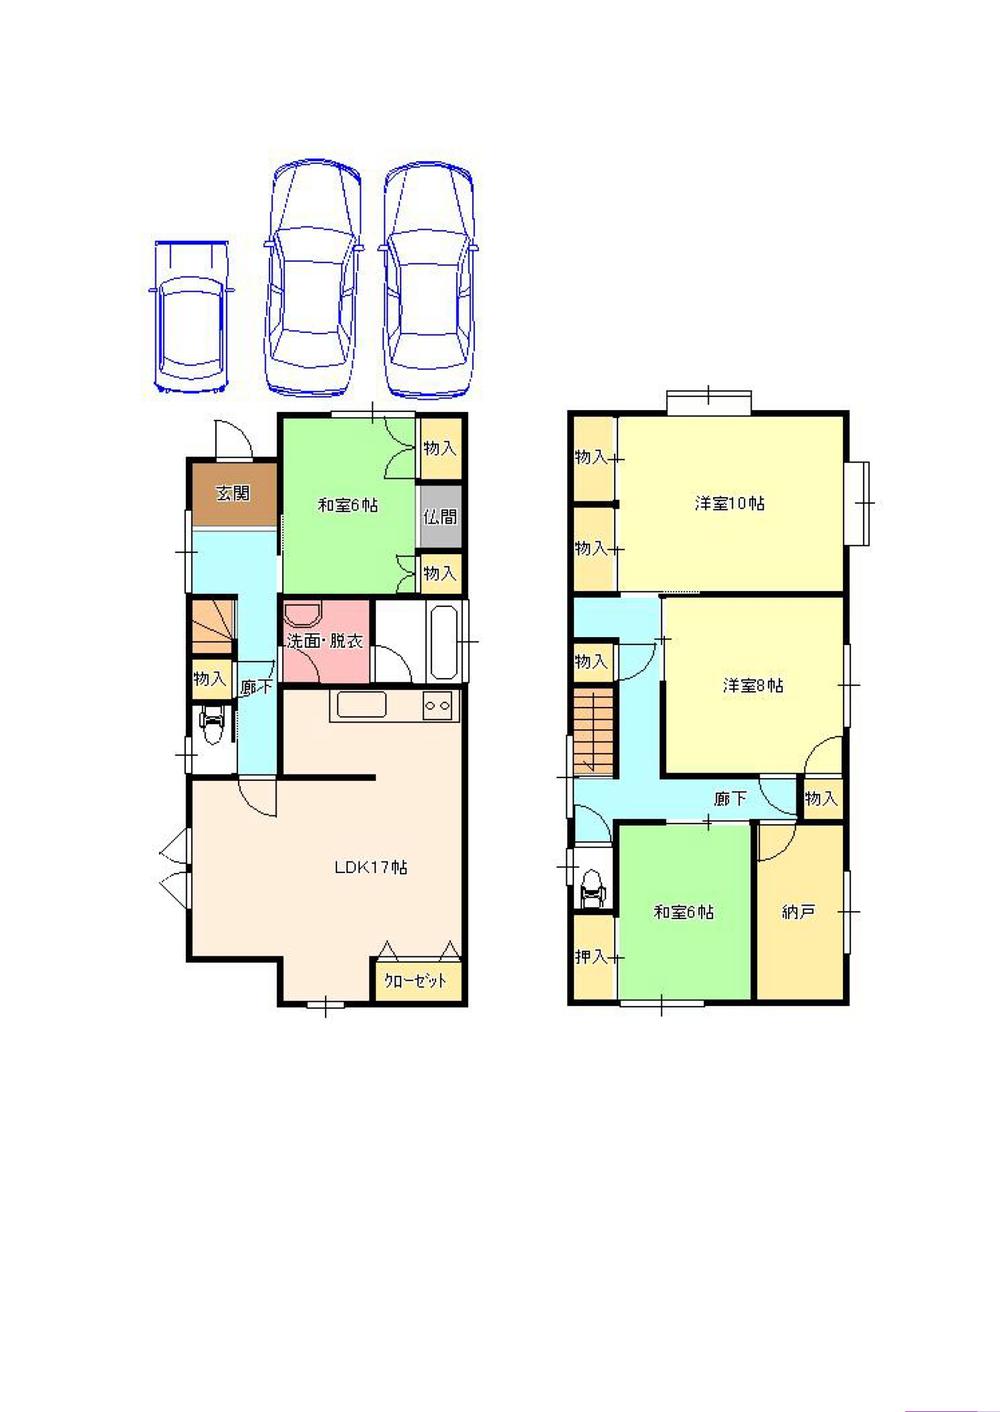 Floor plan. 19,980,000 yen, 4LDK + S (storeroom), Land area 132.23 sq m , Building area 126.3 sq m